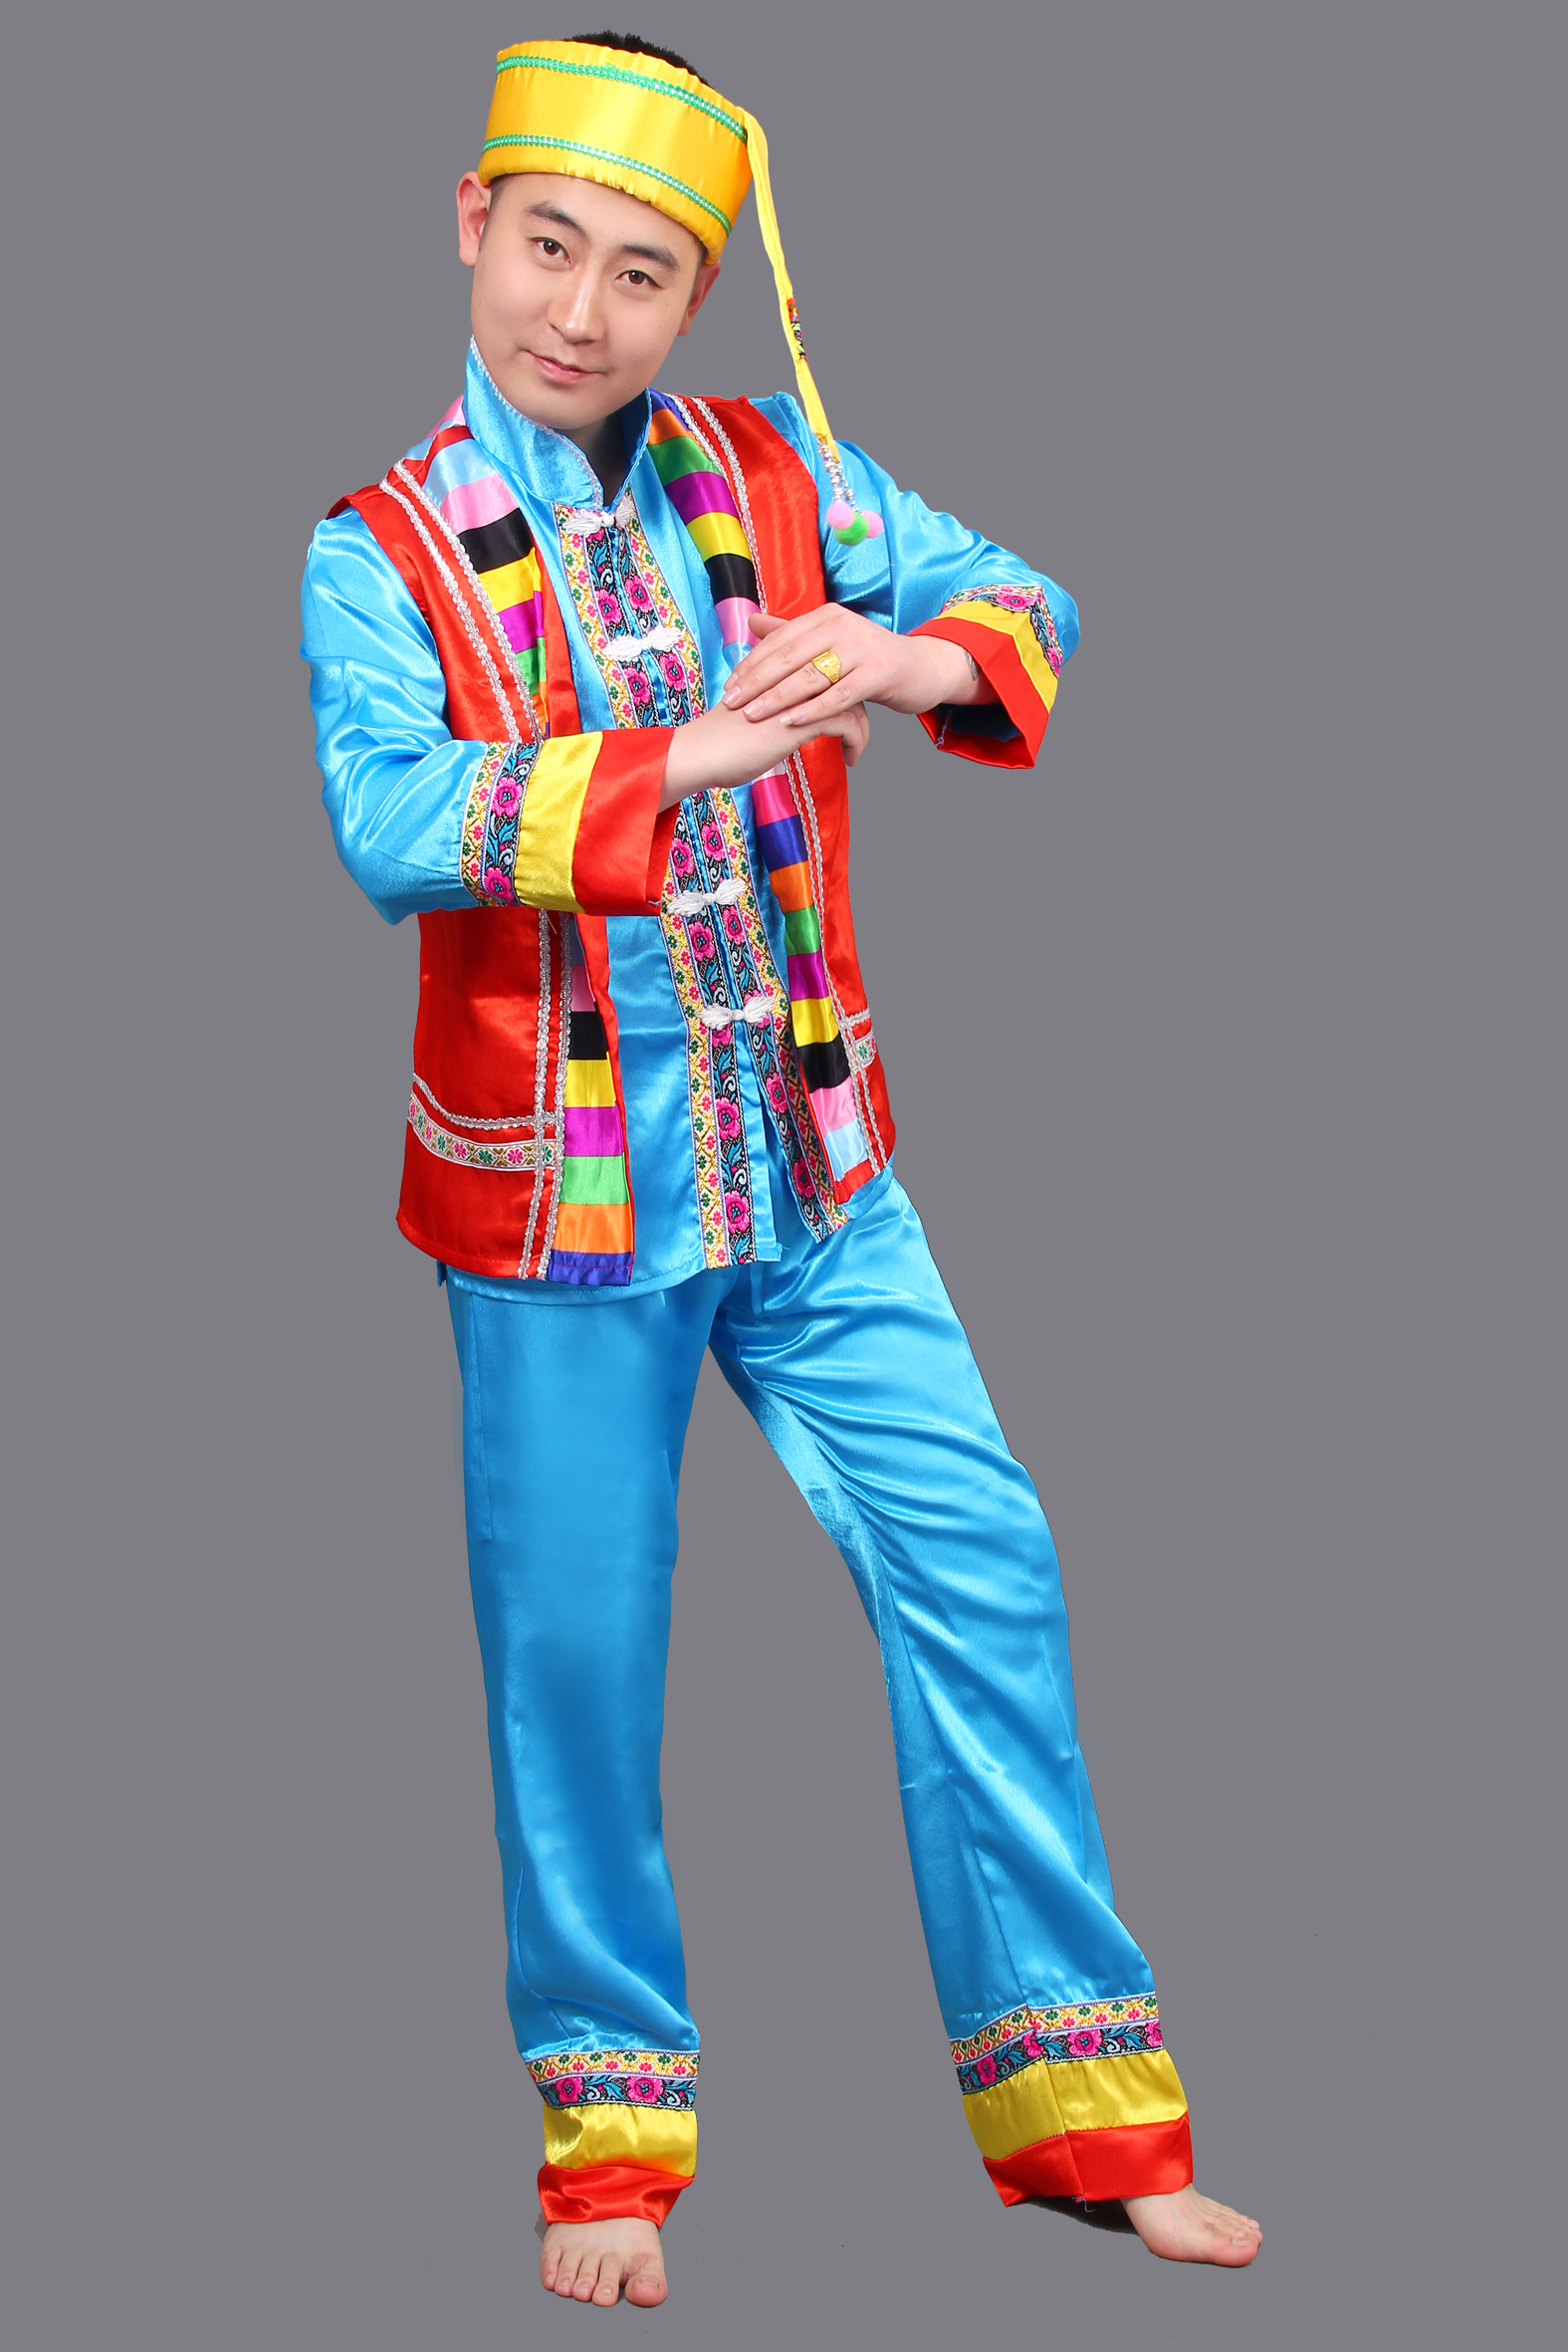 少数民族服装西藏族男装藏族舞蹈服表演出服舞台服装蒙古服男装_艾薇佳古装商城